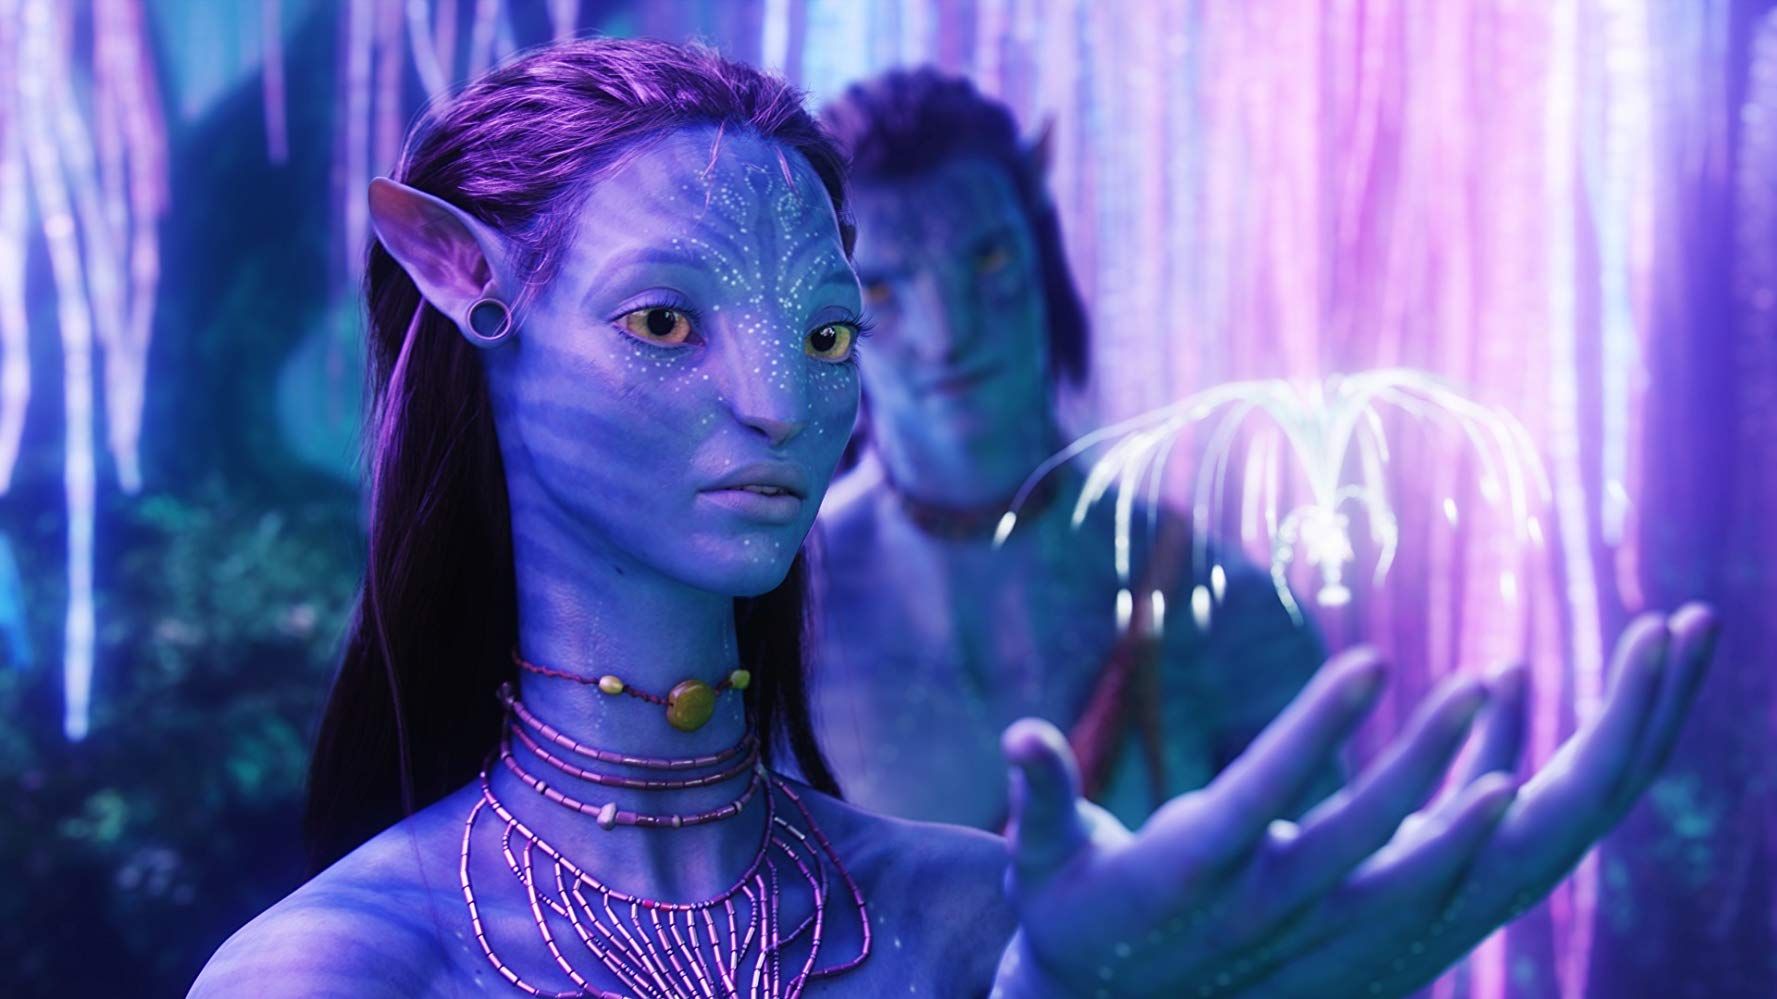 Avatar 2 Trailer James Cameron Reveals More of Pandora  Variety